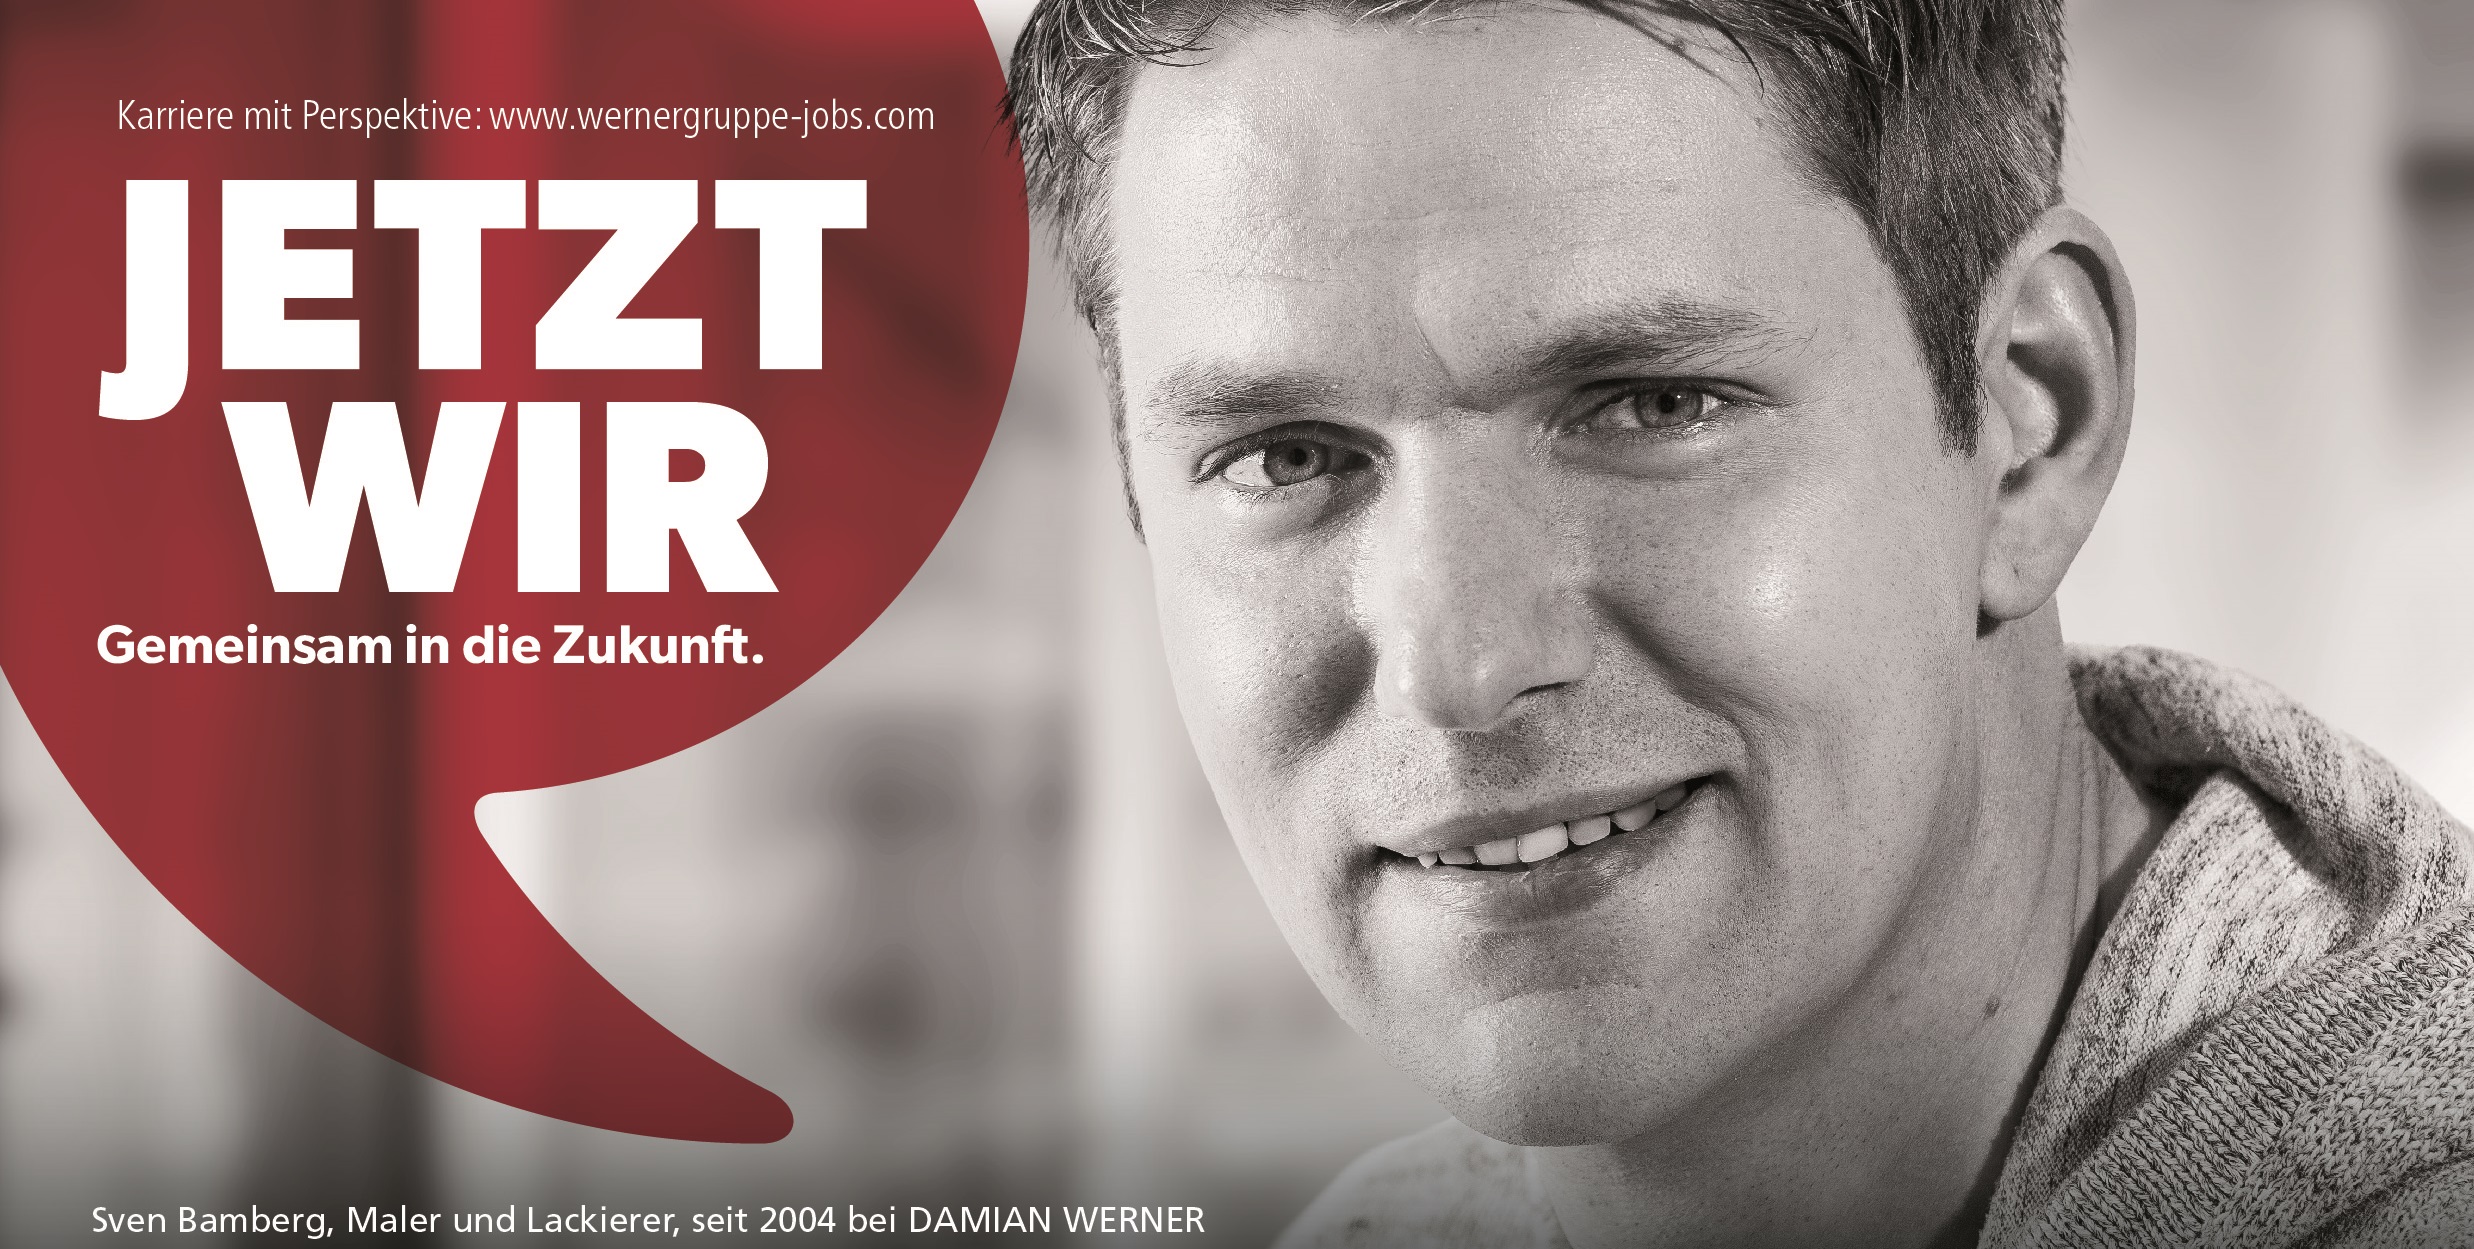 Banner with text: Jetzt wir, gemeinsam in die Zukunft.